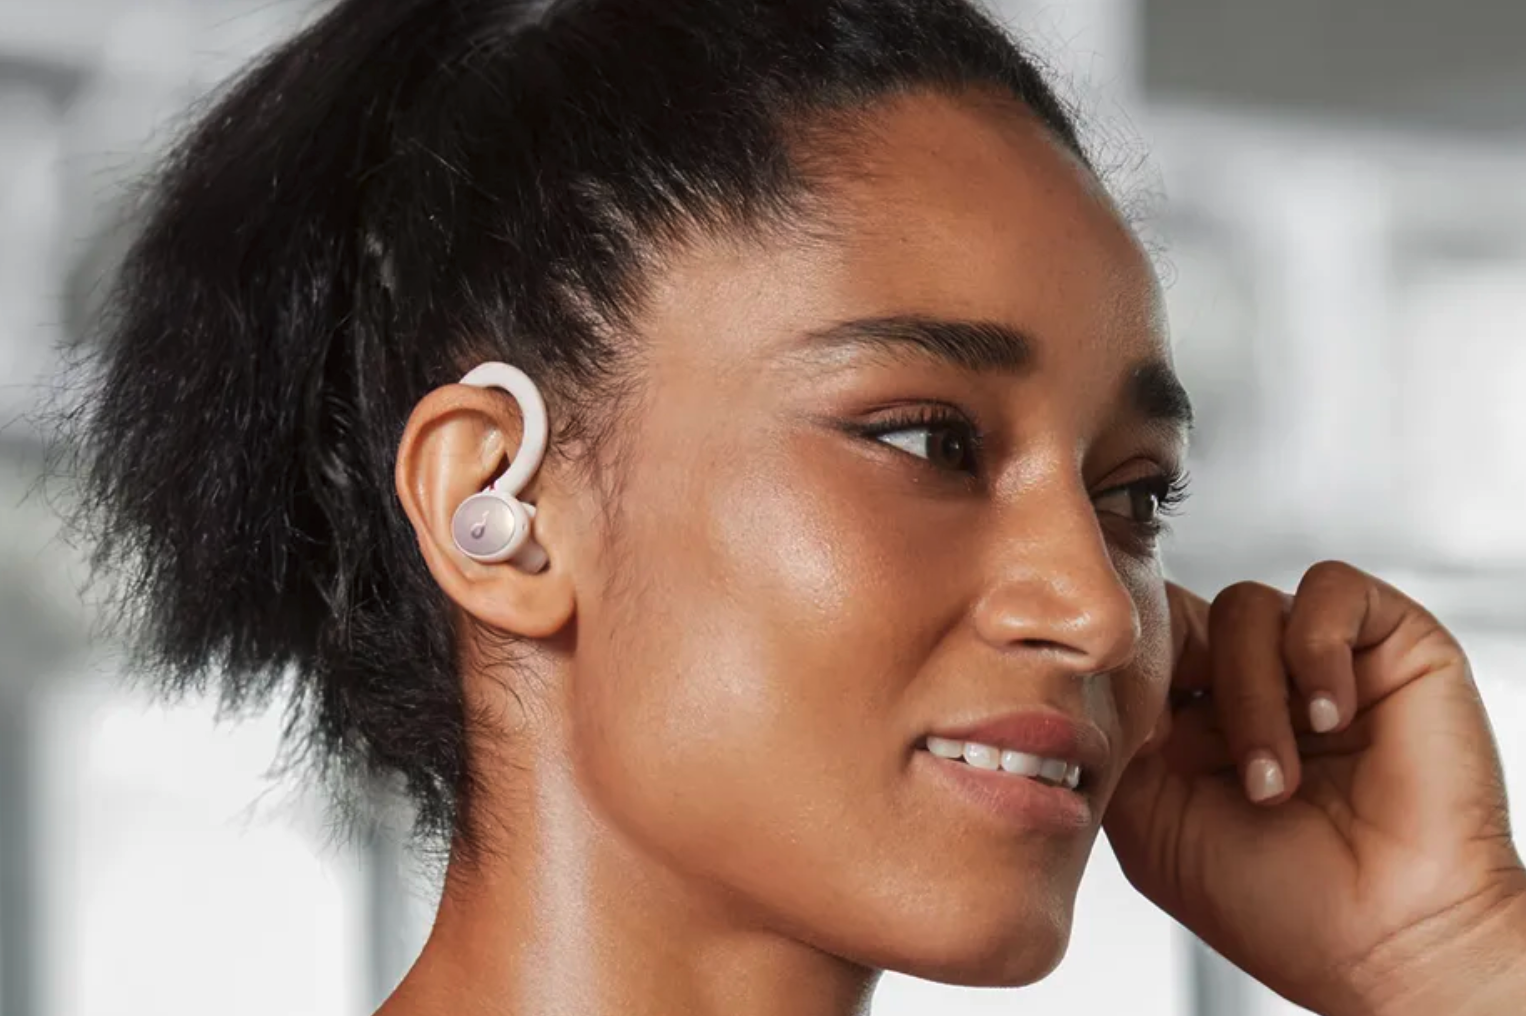 Anker 声阔发布首款运动 TWS 耳机，耳挂可 210° 旋转，并提升了低音听感